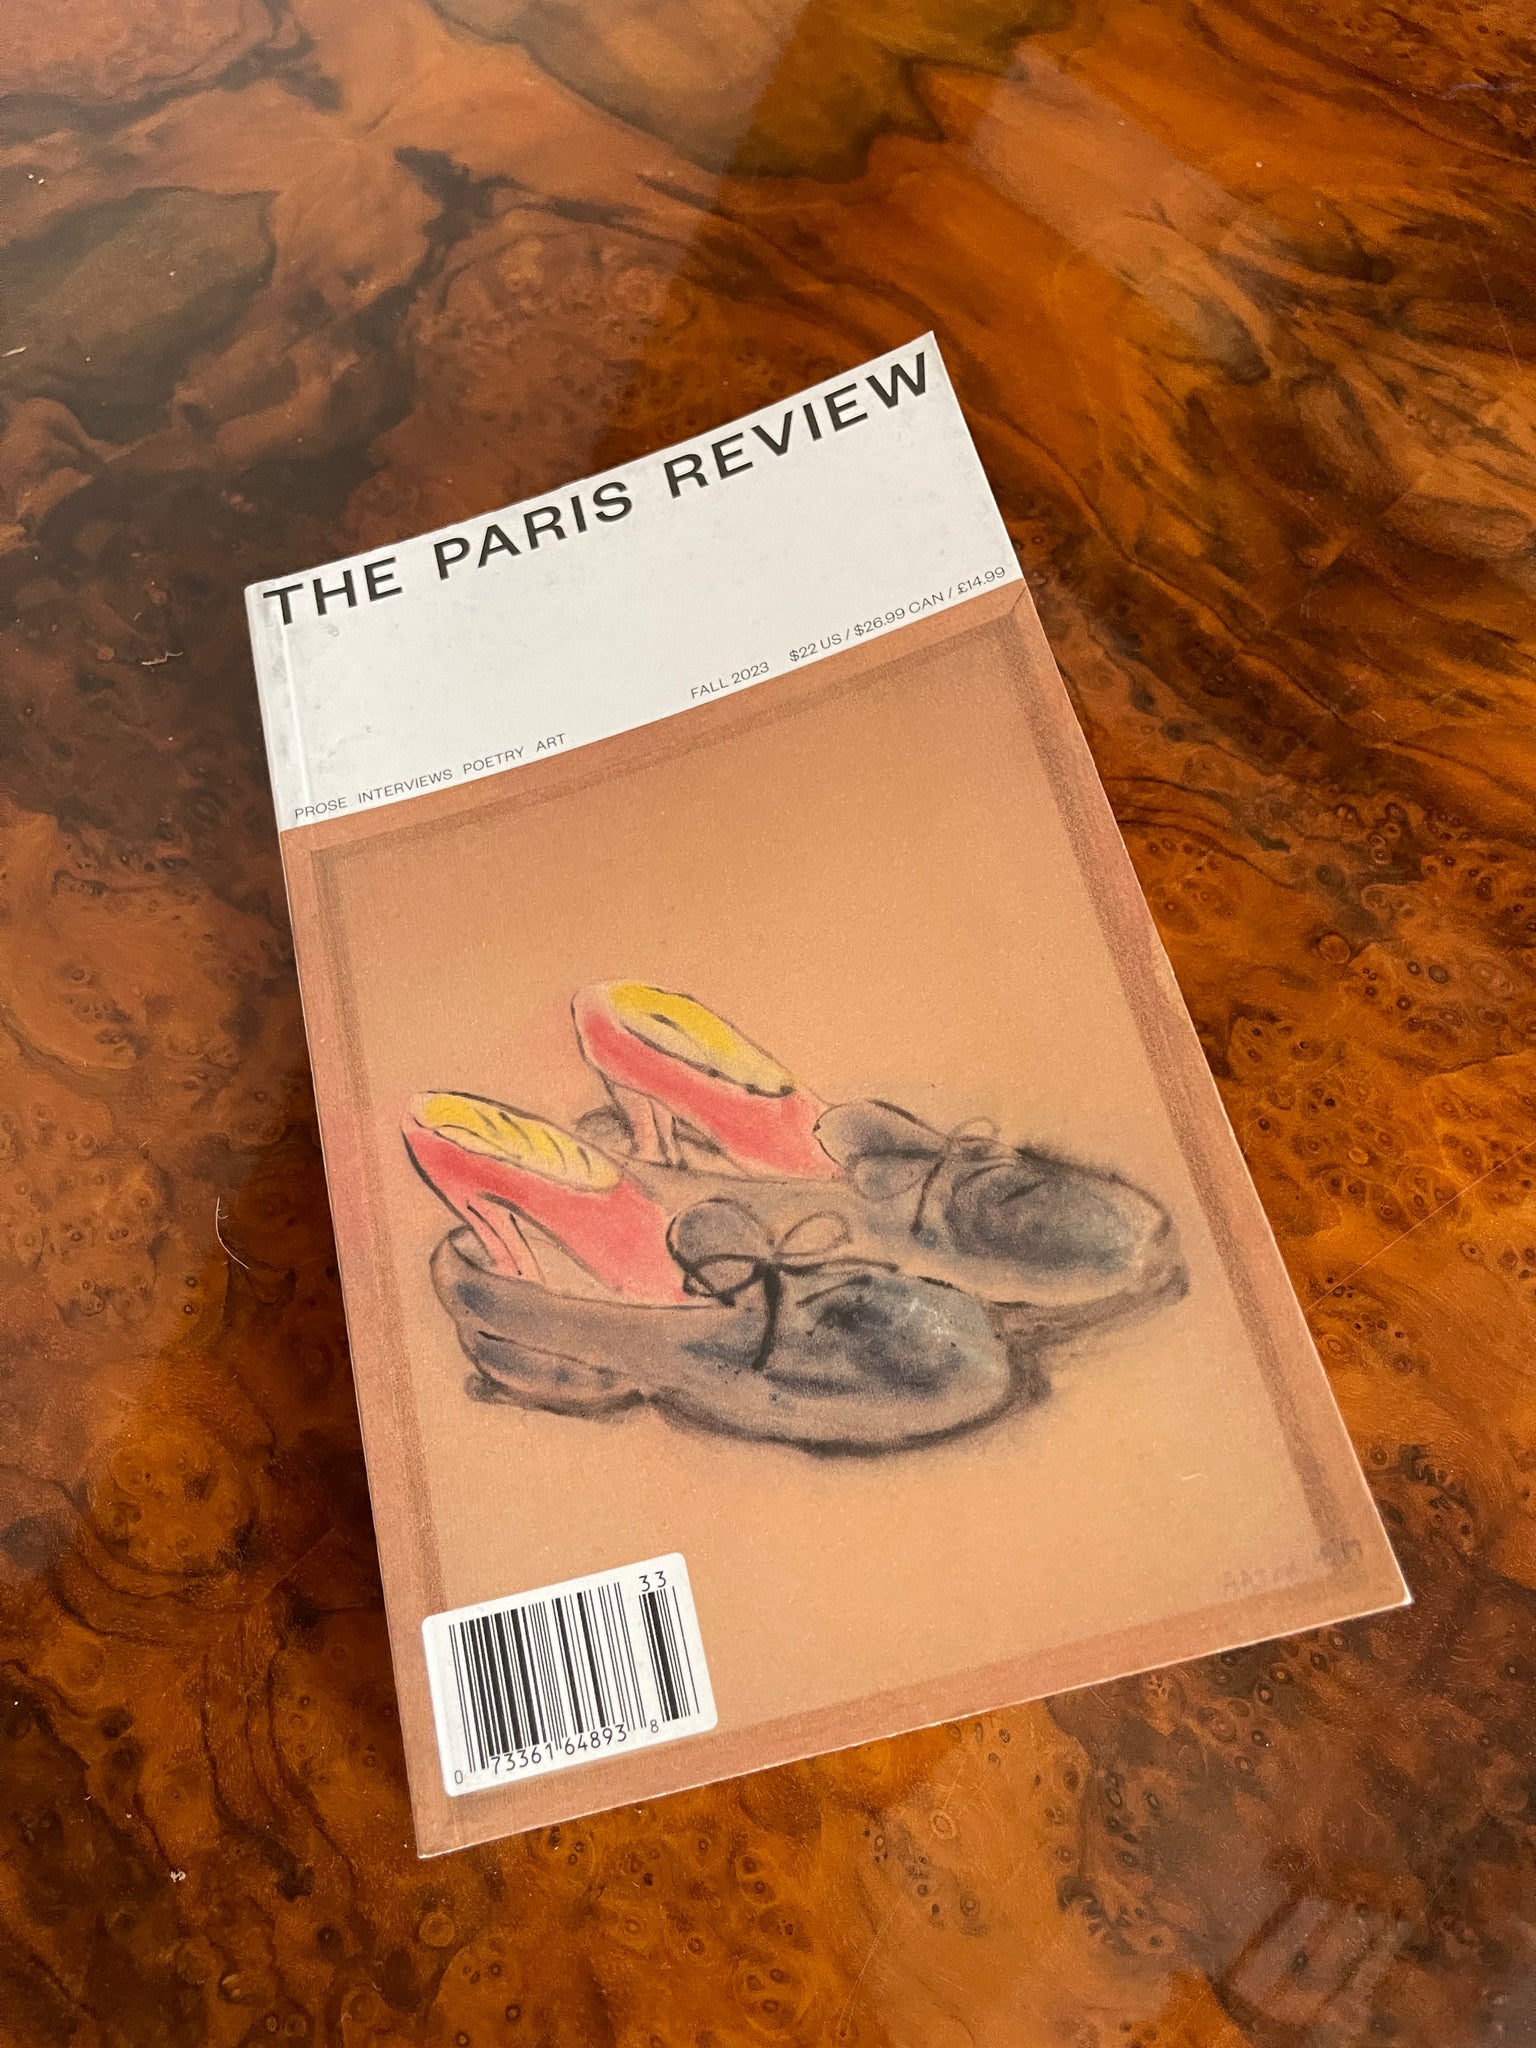 The Paris Review #245